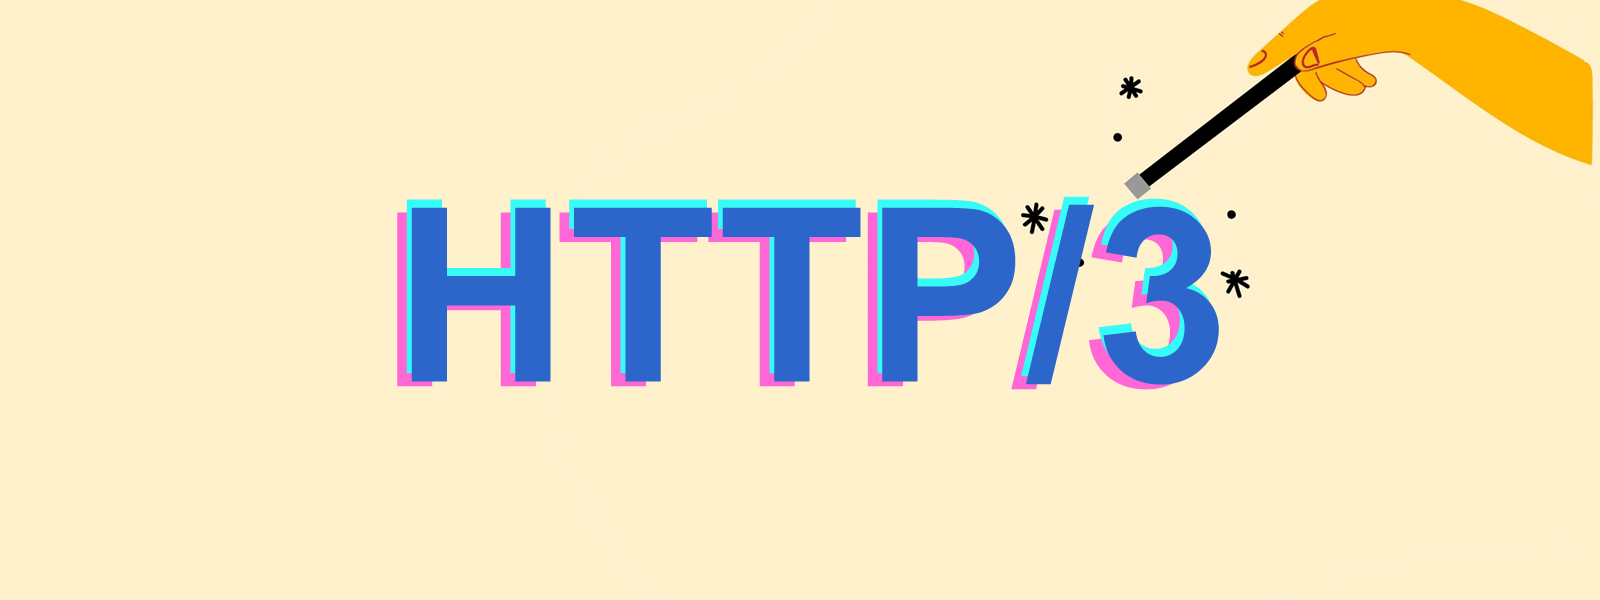 Qué es HTTP/3 y cómo activarlo en tu sitio web